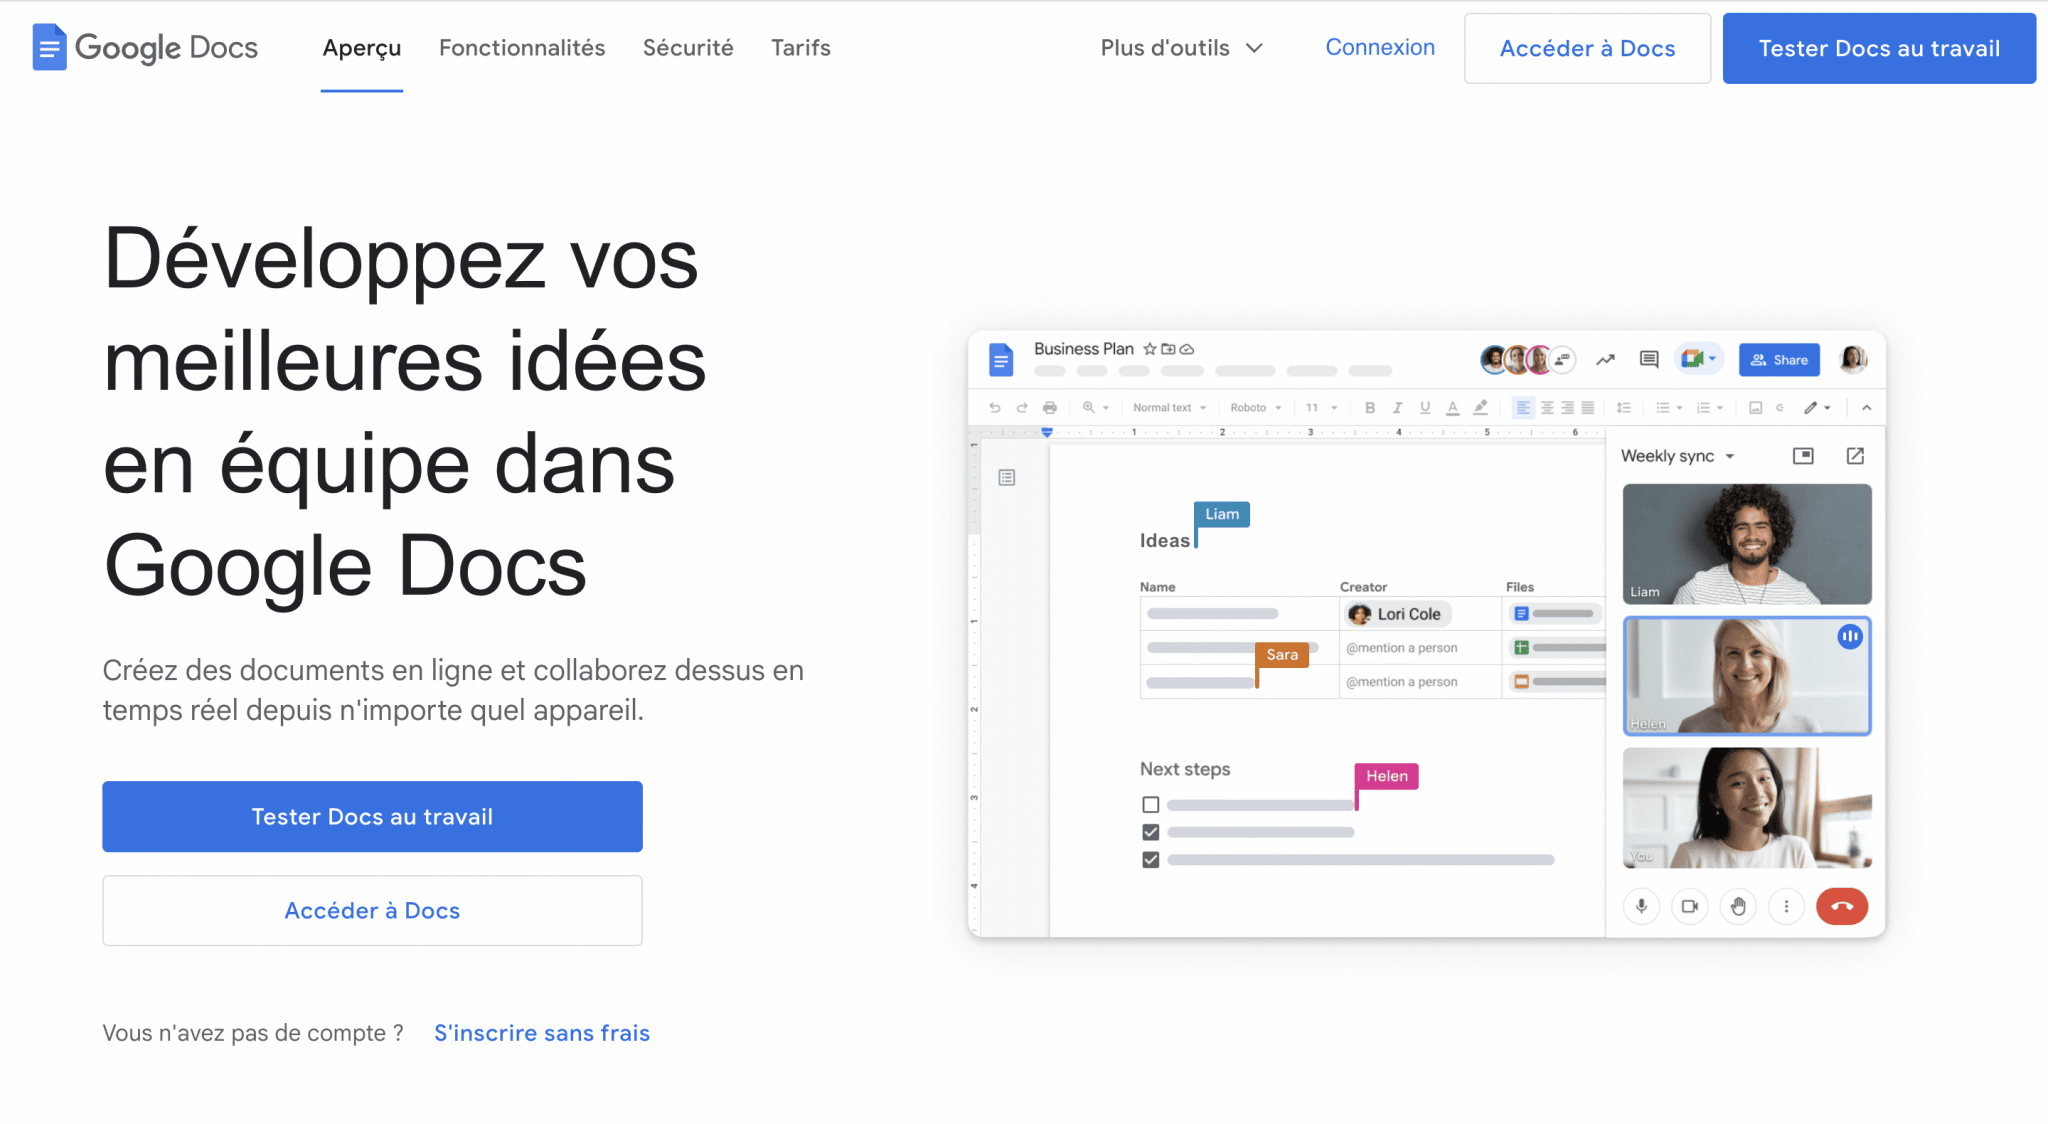 Google Docs est un outil permettant de créer, modifier et partager des documents.